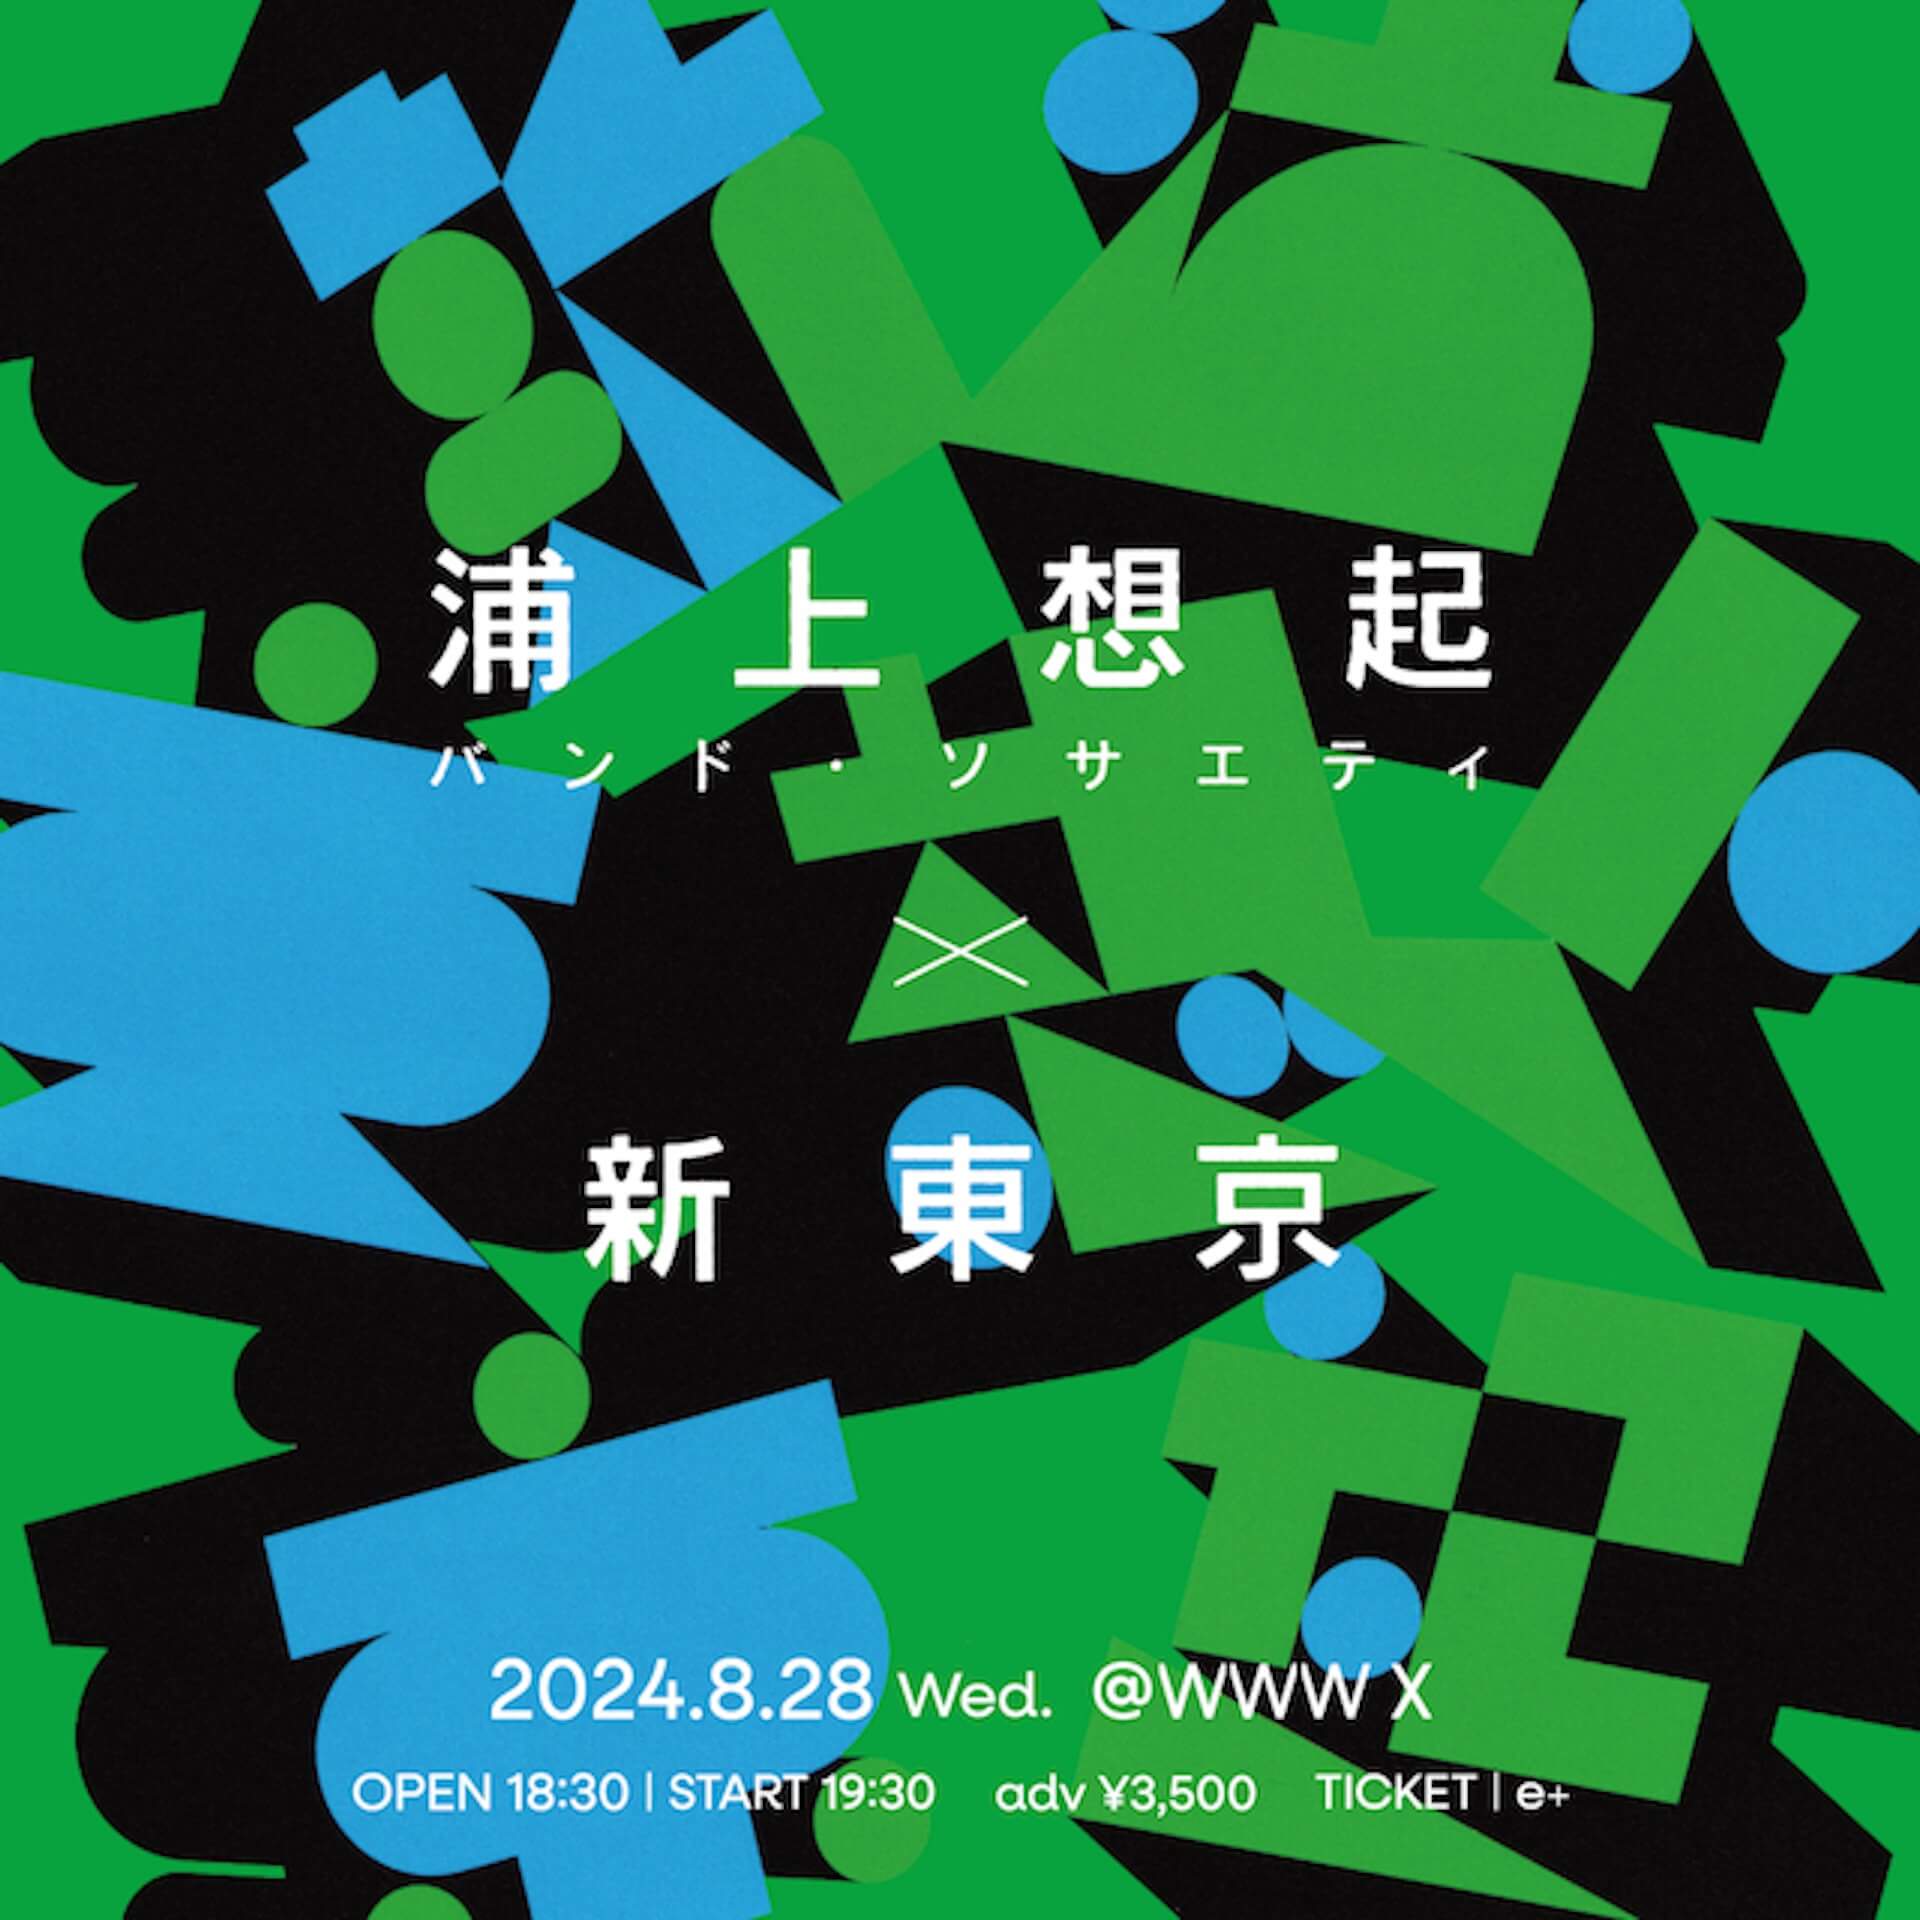 浦上想起・バンド・ソサエティと新東京による2マンライブが渋谷・WWW Xにて開催 music240605-urakami-shintokyo1